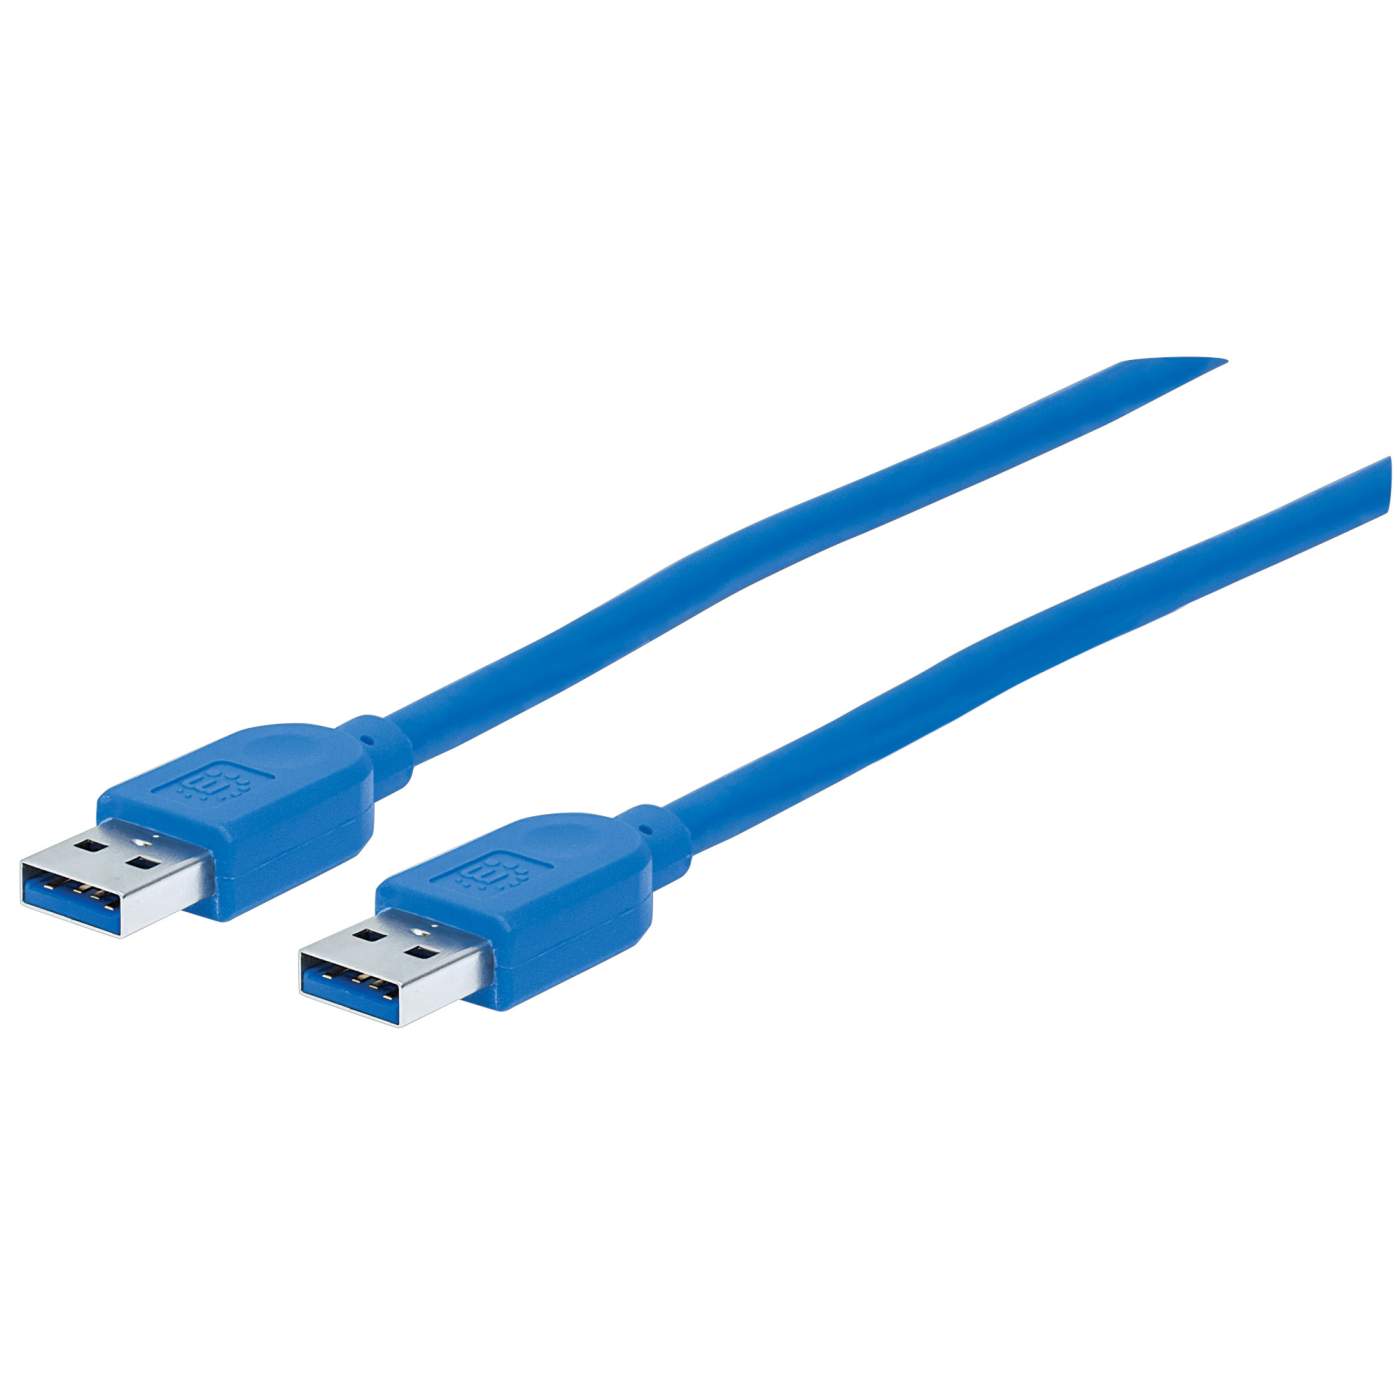 Cable de 1.8m USB 3.0 A Macho a A Macho